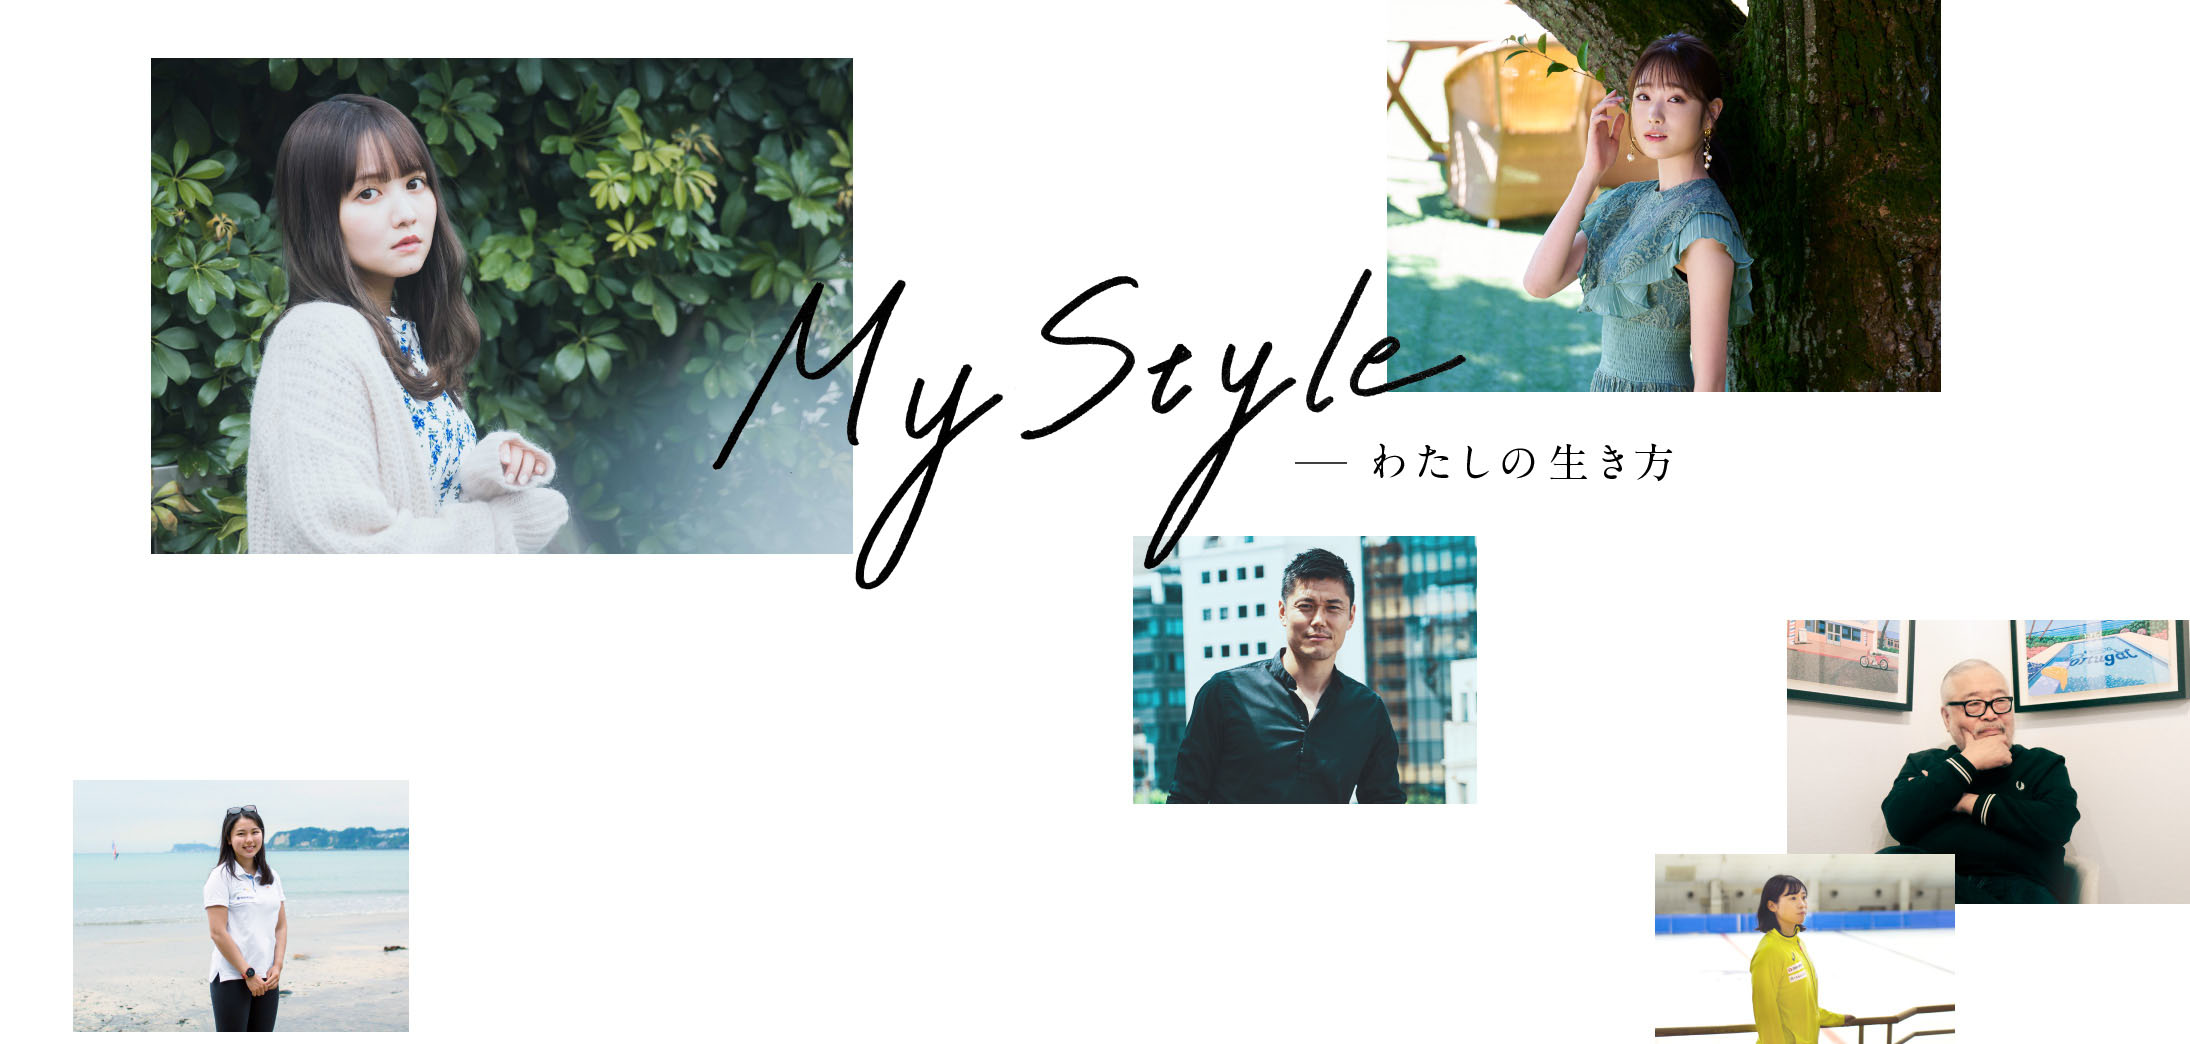 My Style -わたしの生き方